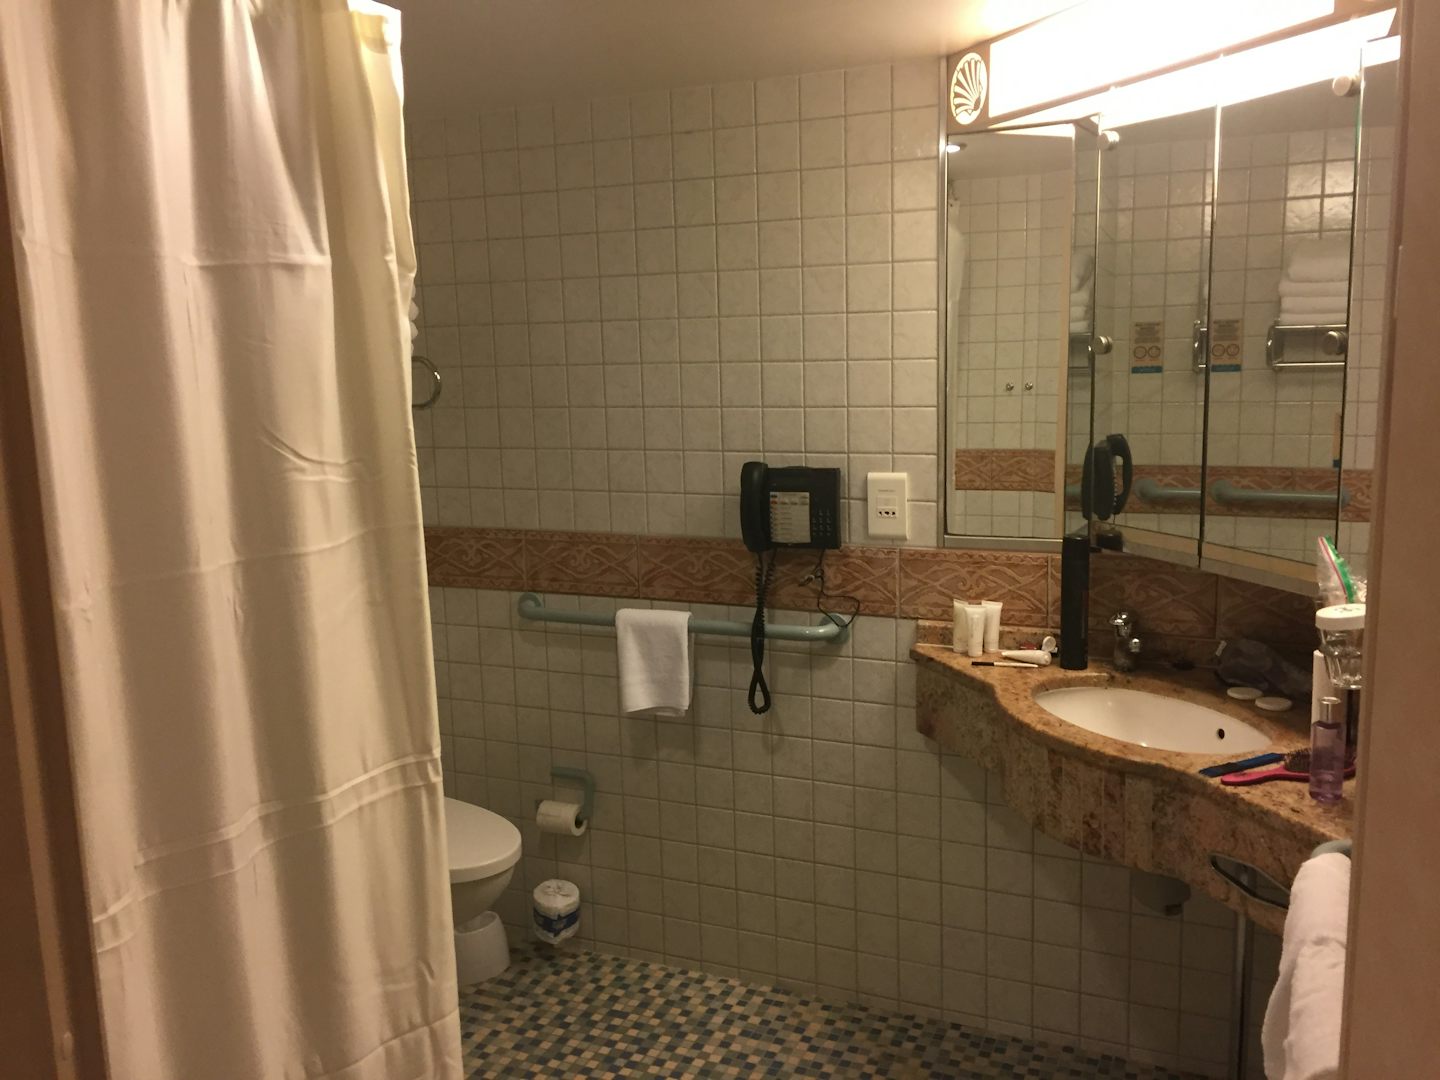 Accessible bathroom. No tub.